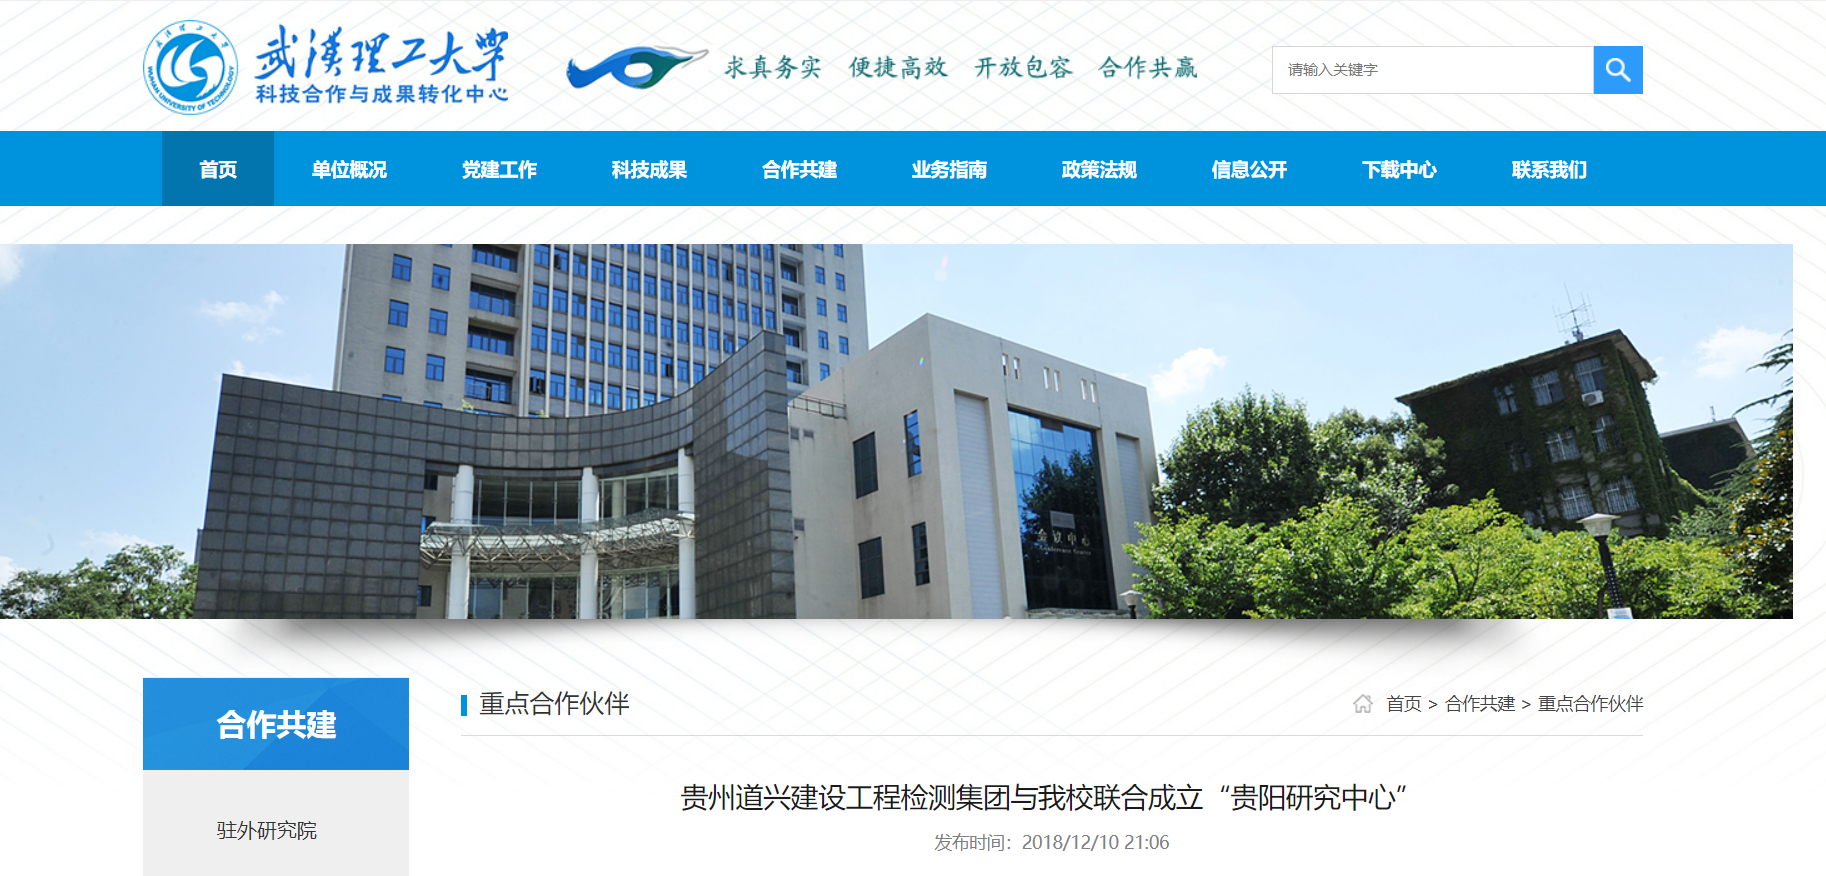 貴州道興建設工程檢測集團與武漢理工大學聯合成立“貴陽研究中心”